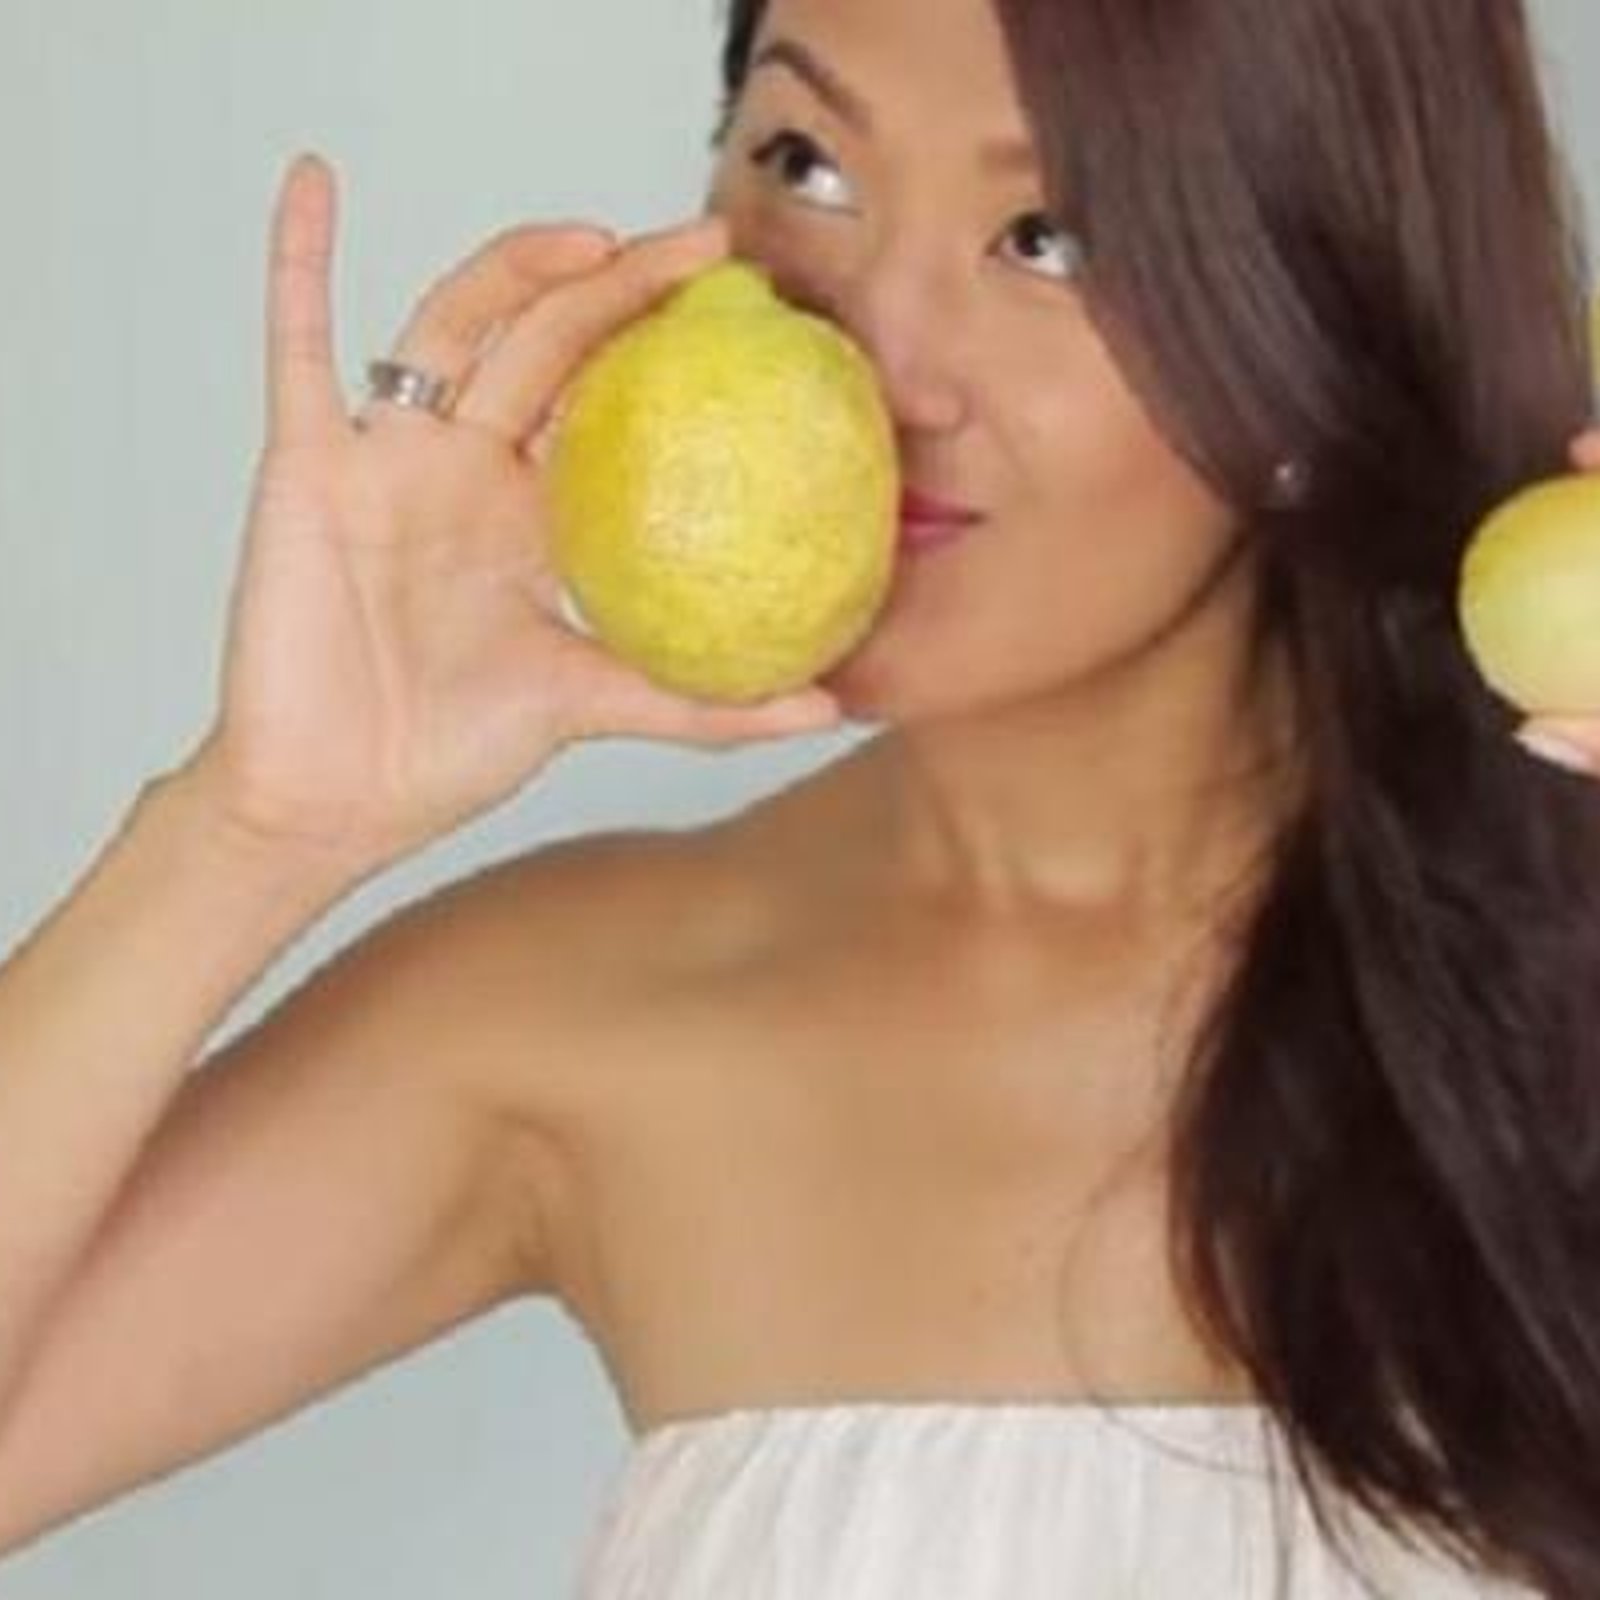 3 façons d'utiliser le citron pour prendre soin de vous! Santé, beauté, soin corporel! 